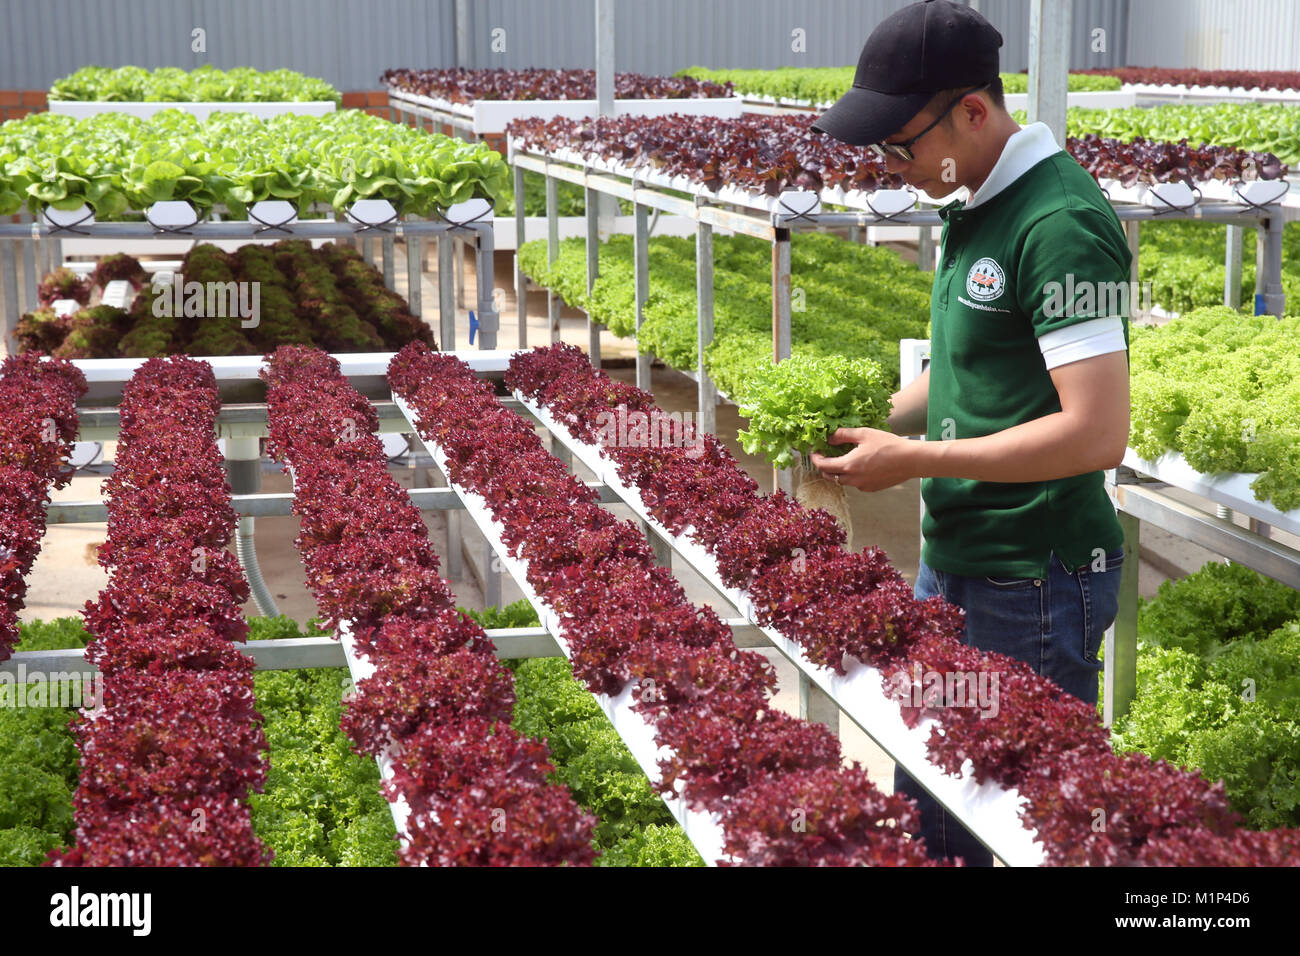 Organische hydroponic vegetable Farm, junger Mann wachsende organische Kopfsalat, Dalat, Vietnam, Indochina, Südostasien, Asien Stockfoto